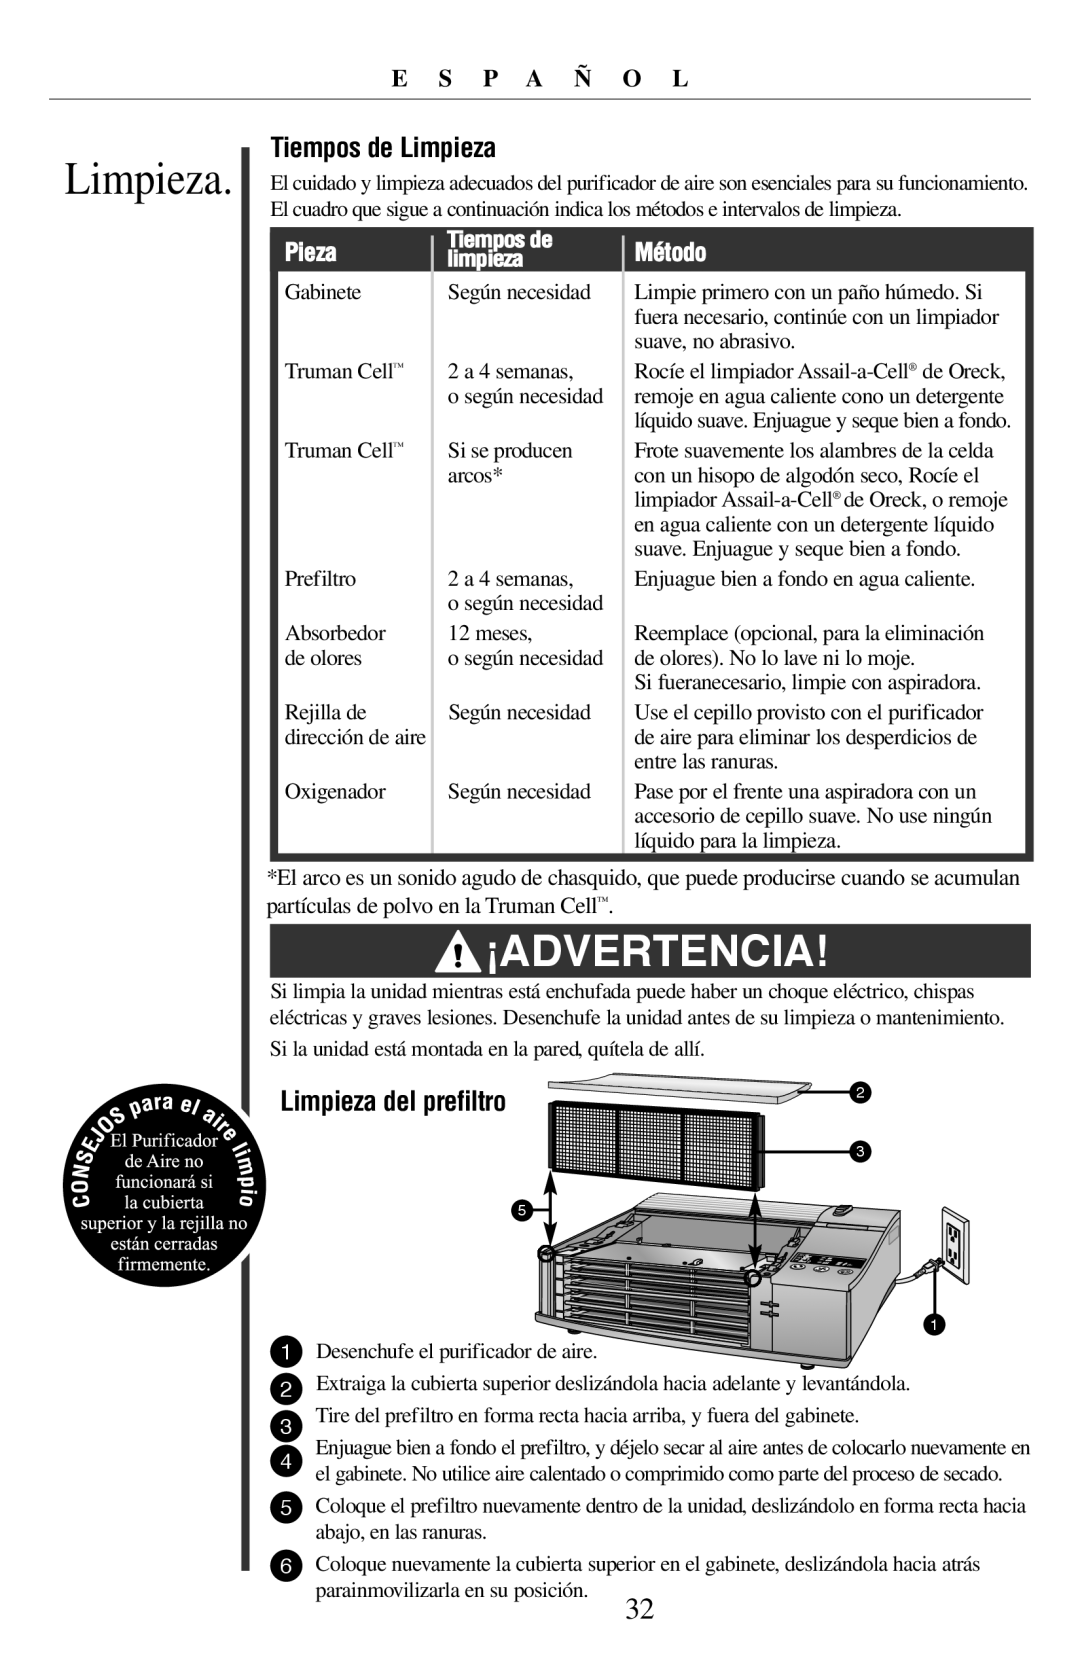 Oreck 21057-03 manual ¡AdVERTENCIA, Tiempos de Limpieza, E S P A Ñ O L, Pieza, Método, limpieza 